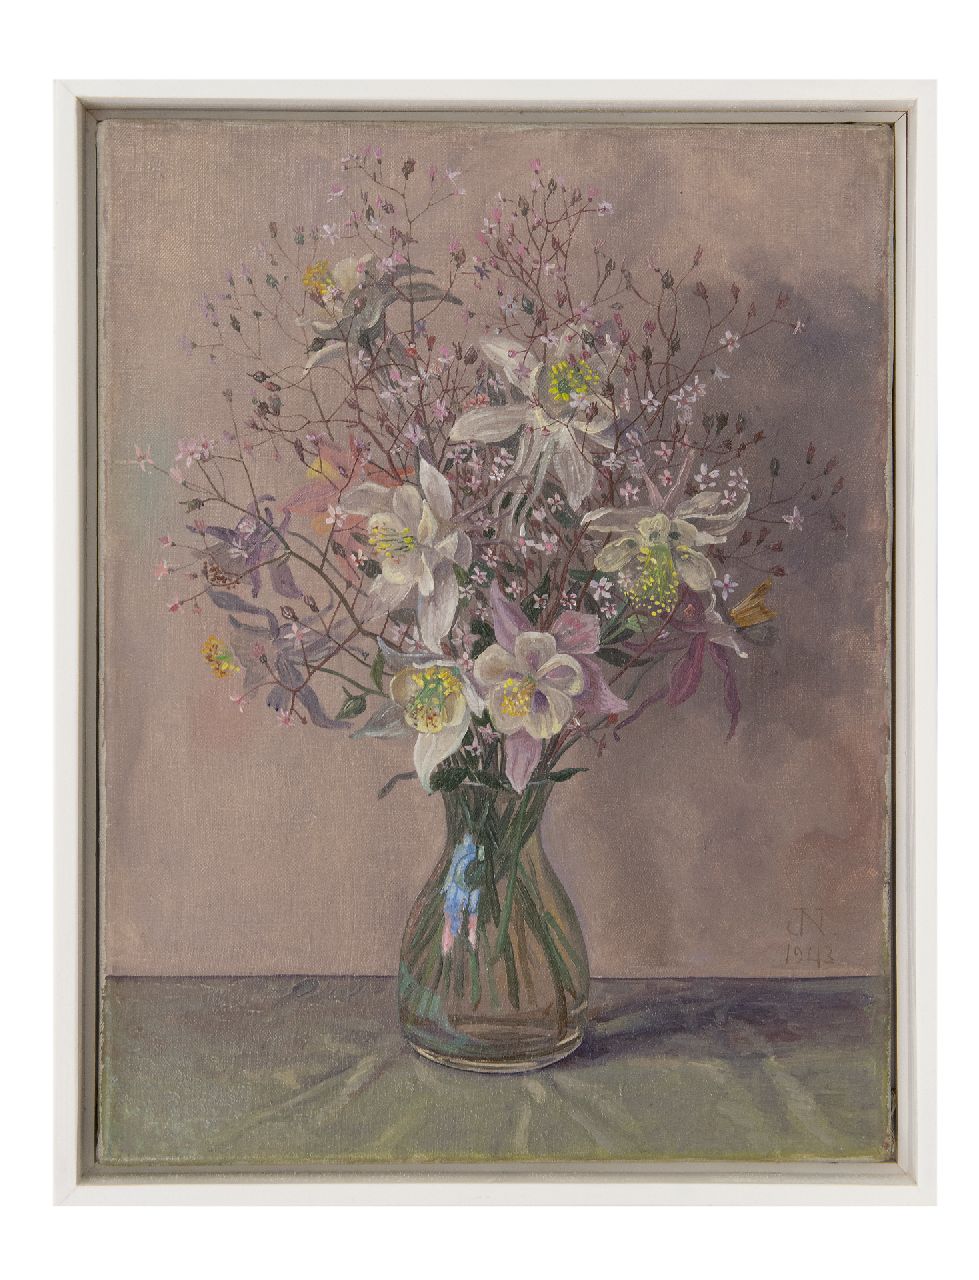 Nieweg J.  | Jakob Nieweg | Schilderijen te koop aangeboden | Bloemen in glazen vaas, olieverf op doek 40,3 x 30,4 cm, gesigneerd rechtsonder met monogram en gedateerd 1943